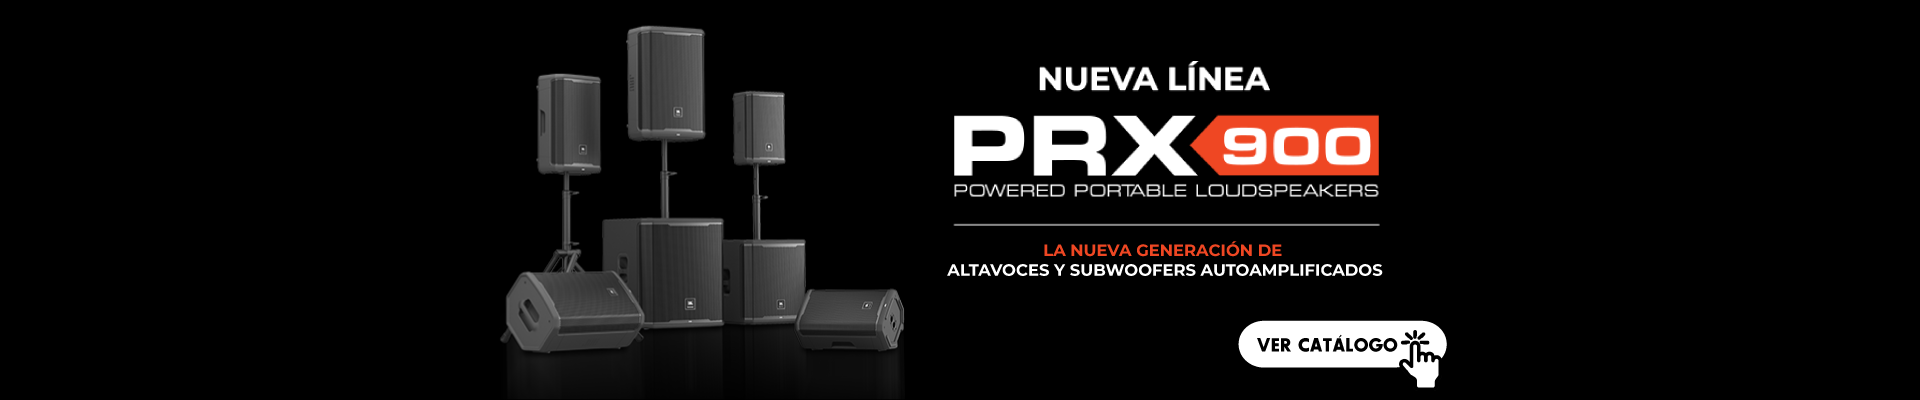 Nueva línea PRX 900